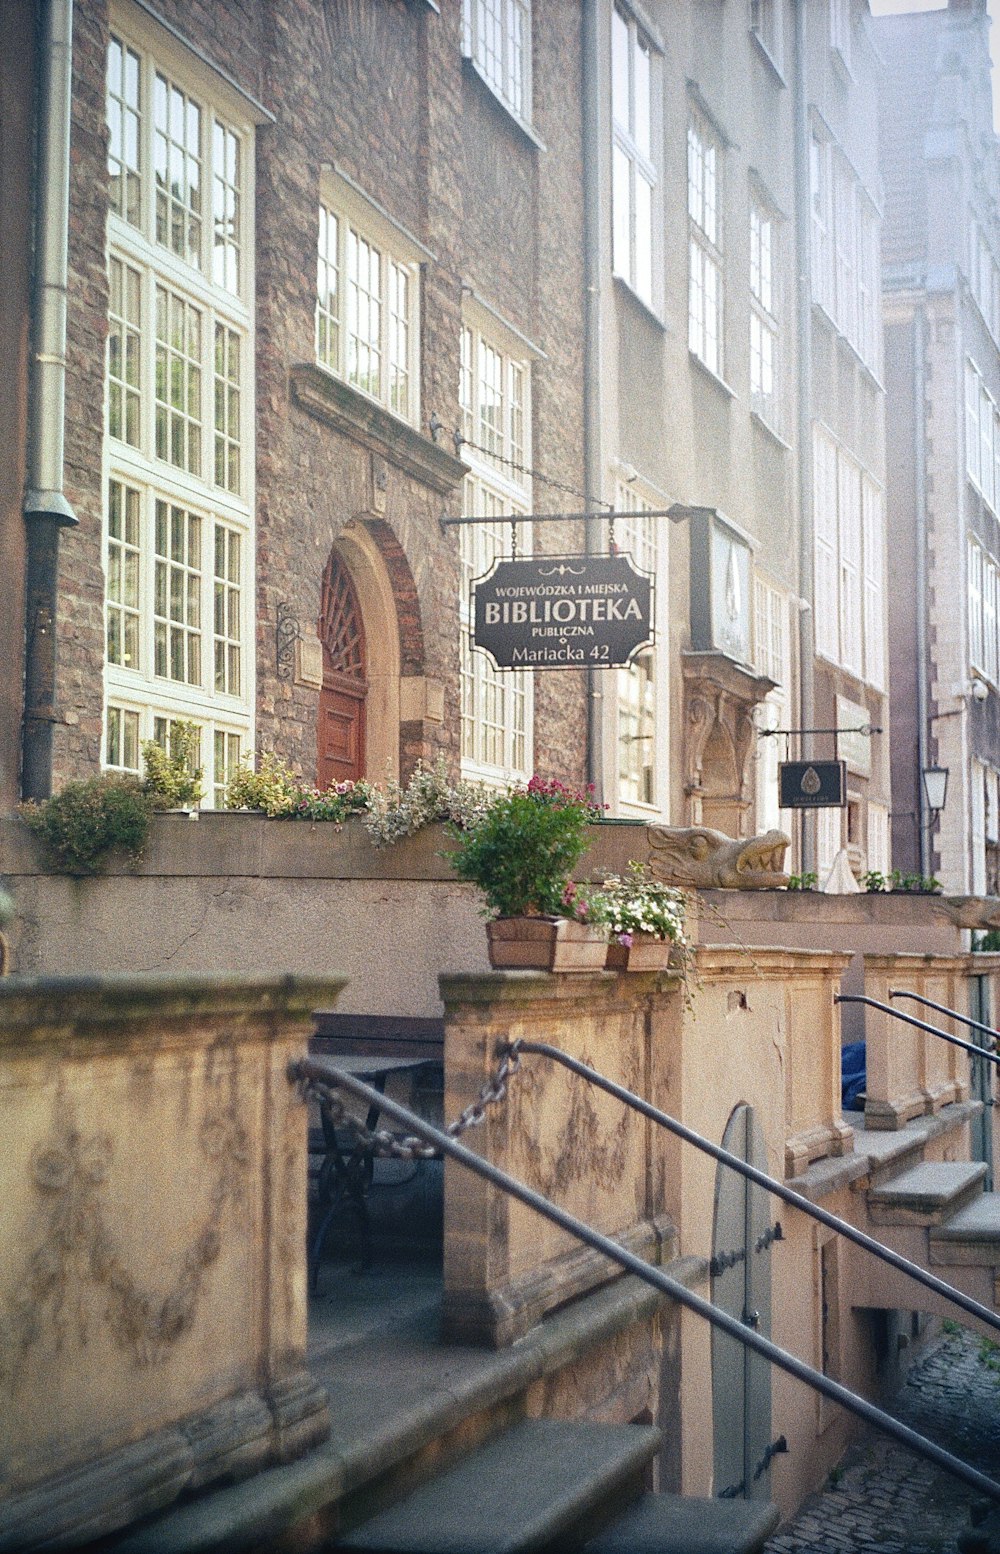 Un edificio in pietra con un cartello che dice Bluetor su di esso